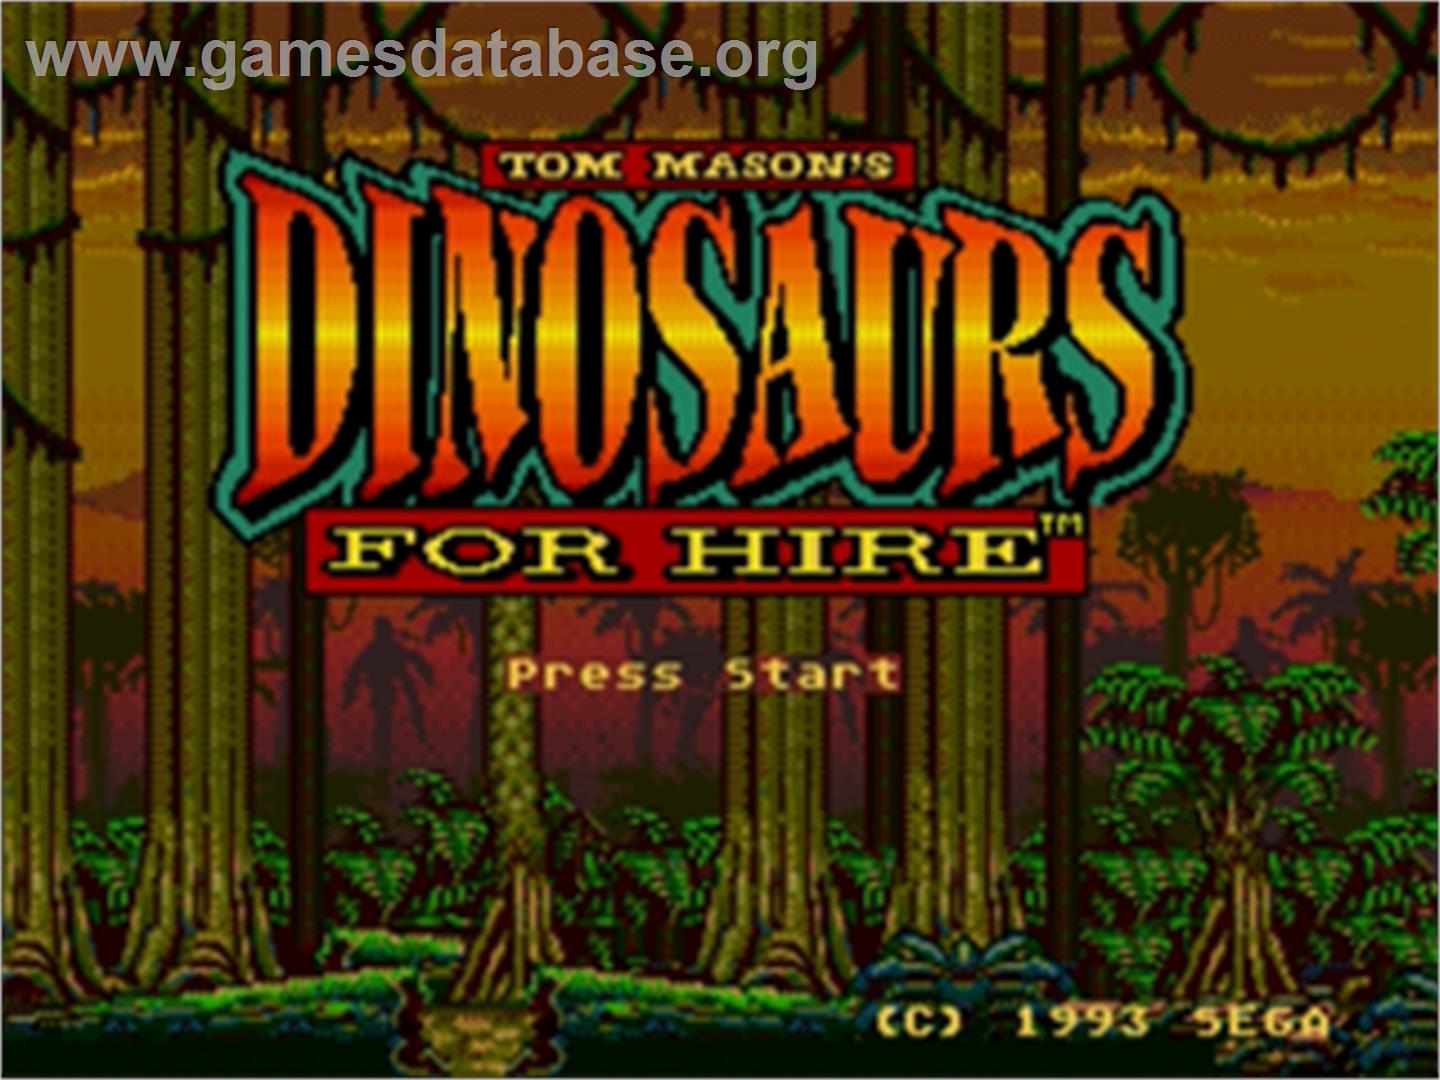 Dinosaurs for Hire - Sega Genesis - Artwork - Title Screen